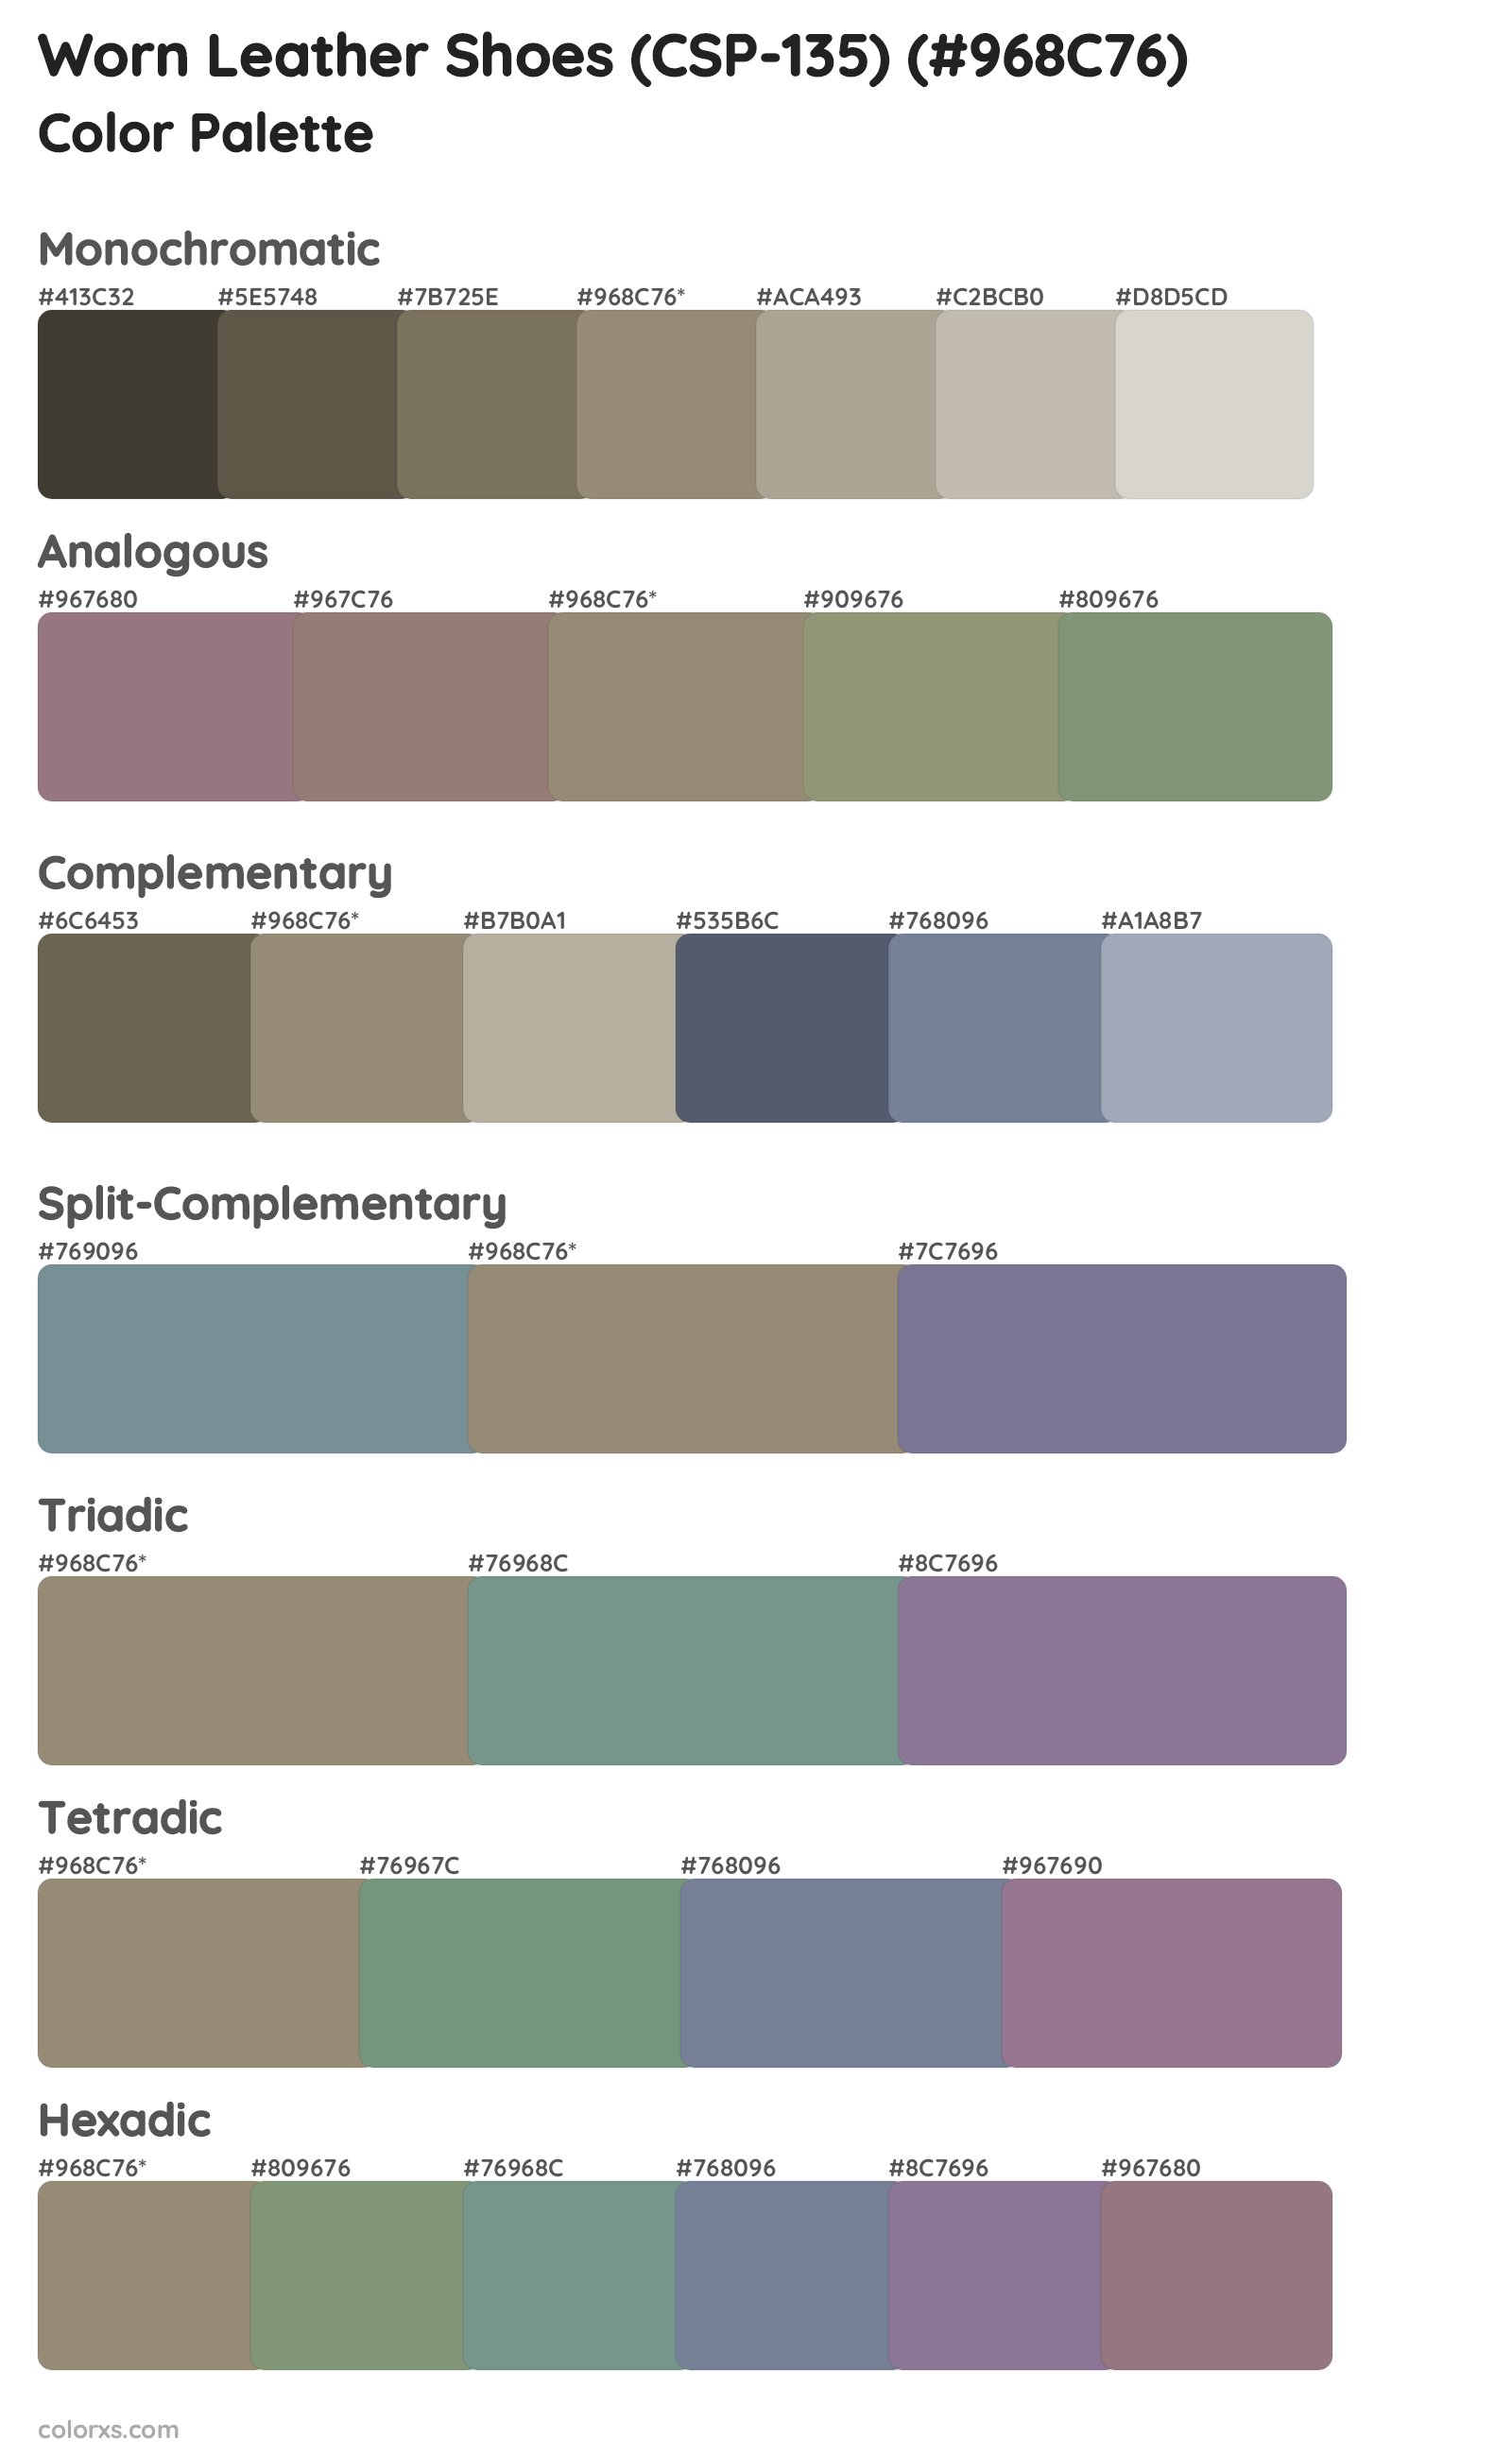 Worn Leather Shoes (CSP-135) Color Scheme Palettes